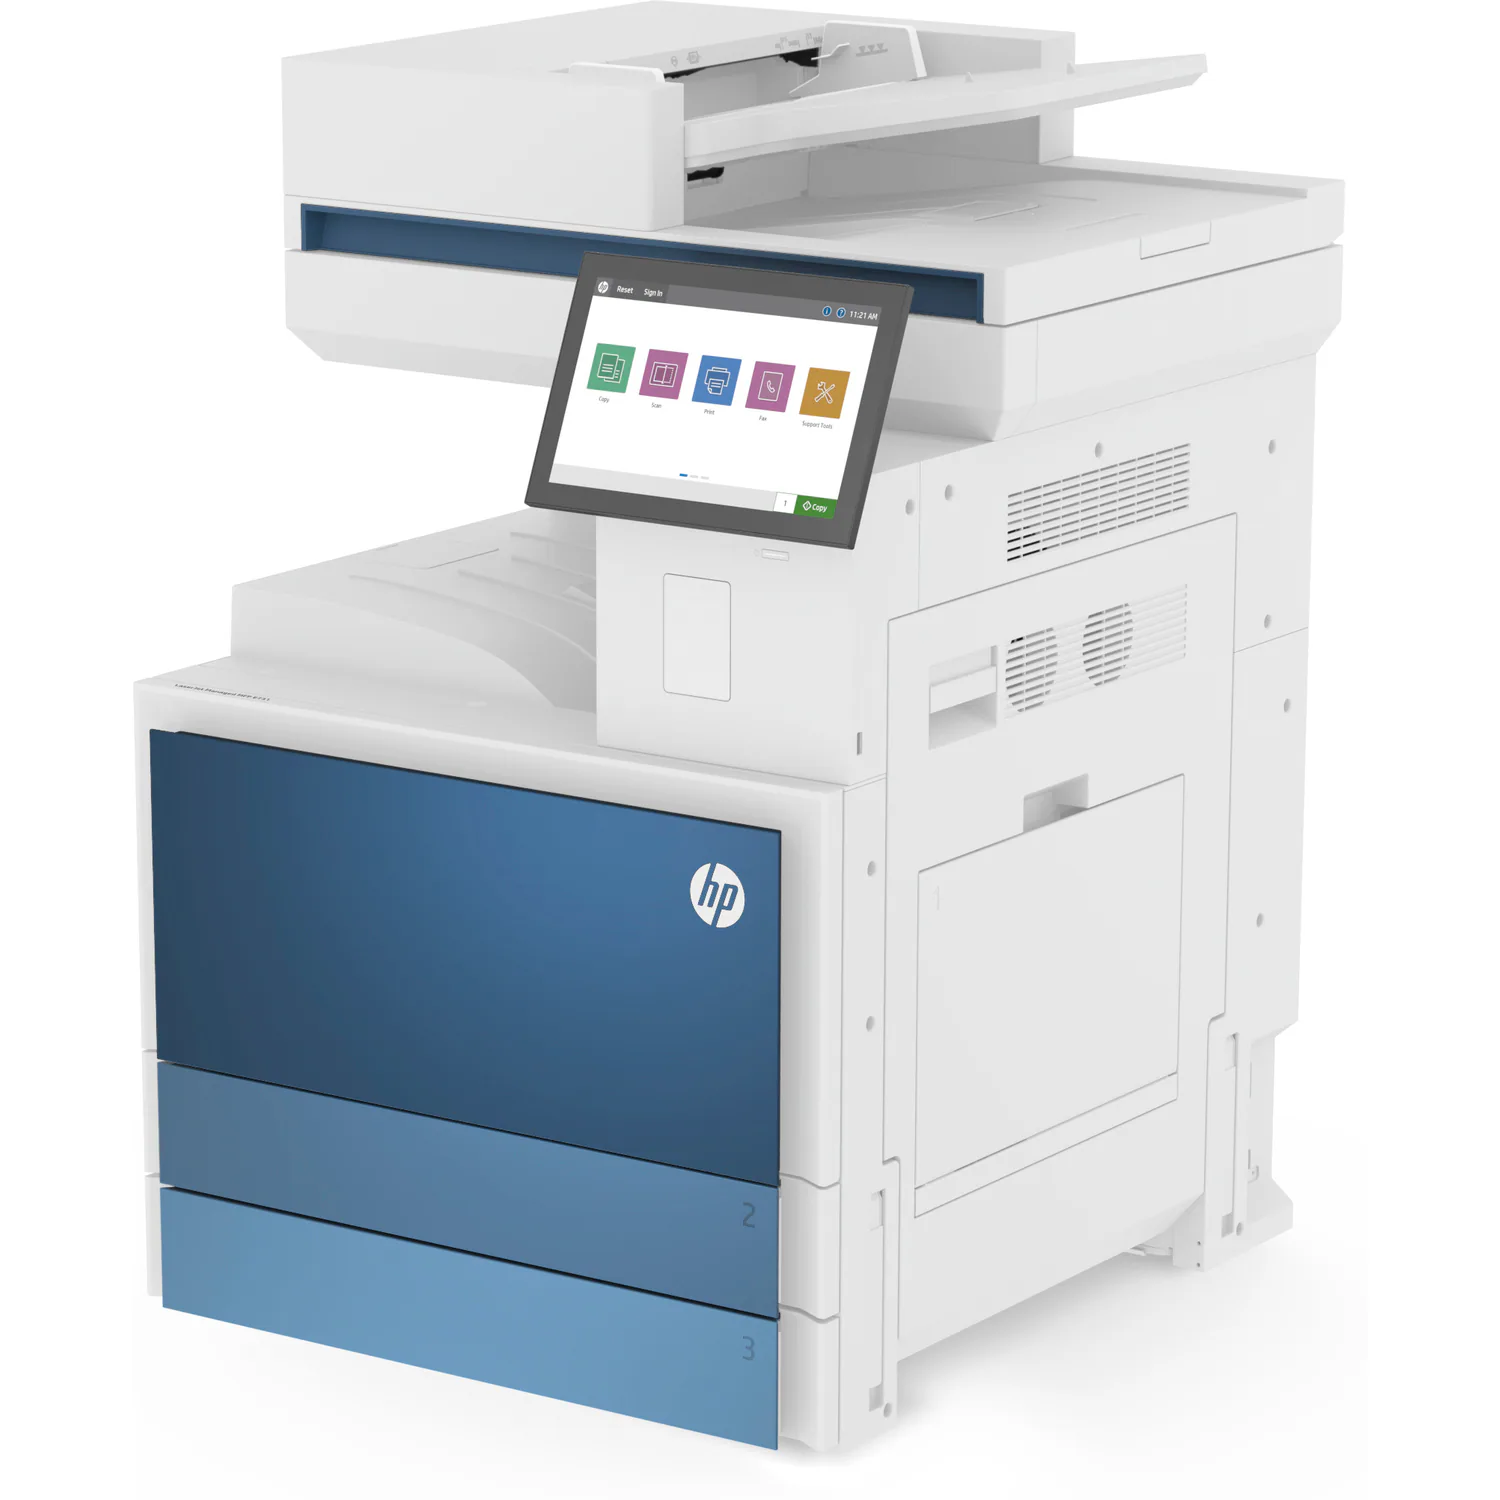 Máy Photocopy đen trắng đa chức năng HP LaserJet Managed MFP E826Z - 5QK13A (50 trang/1 phút)